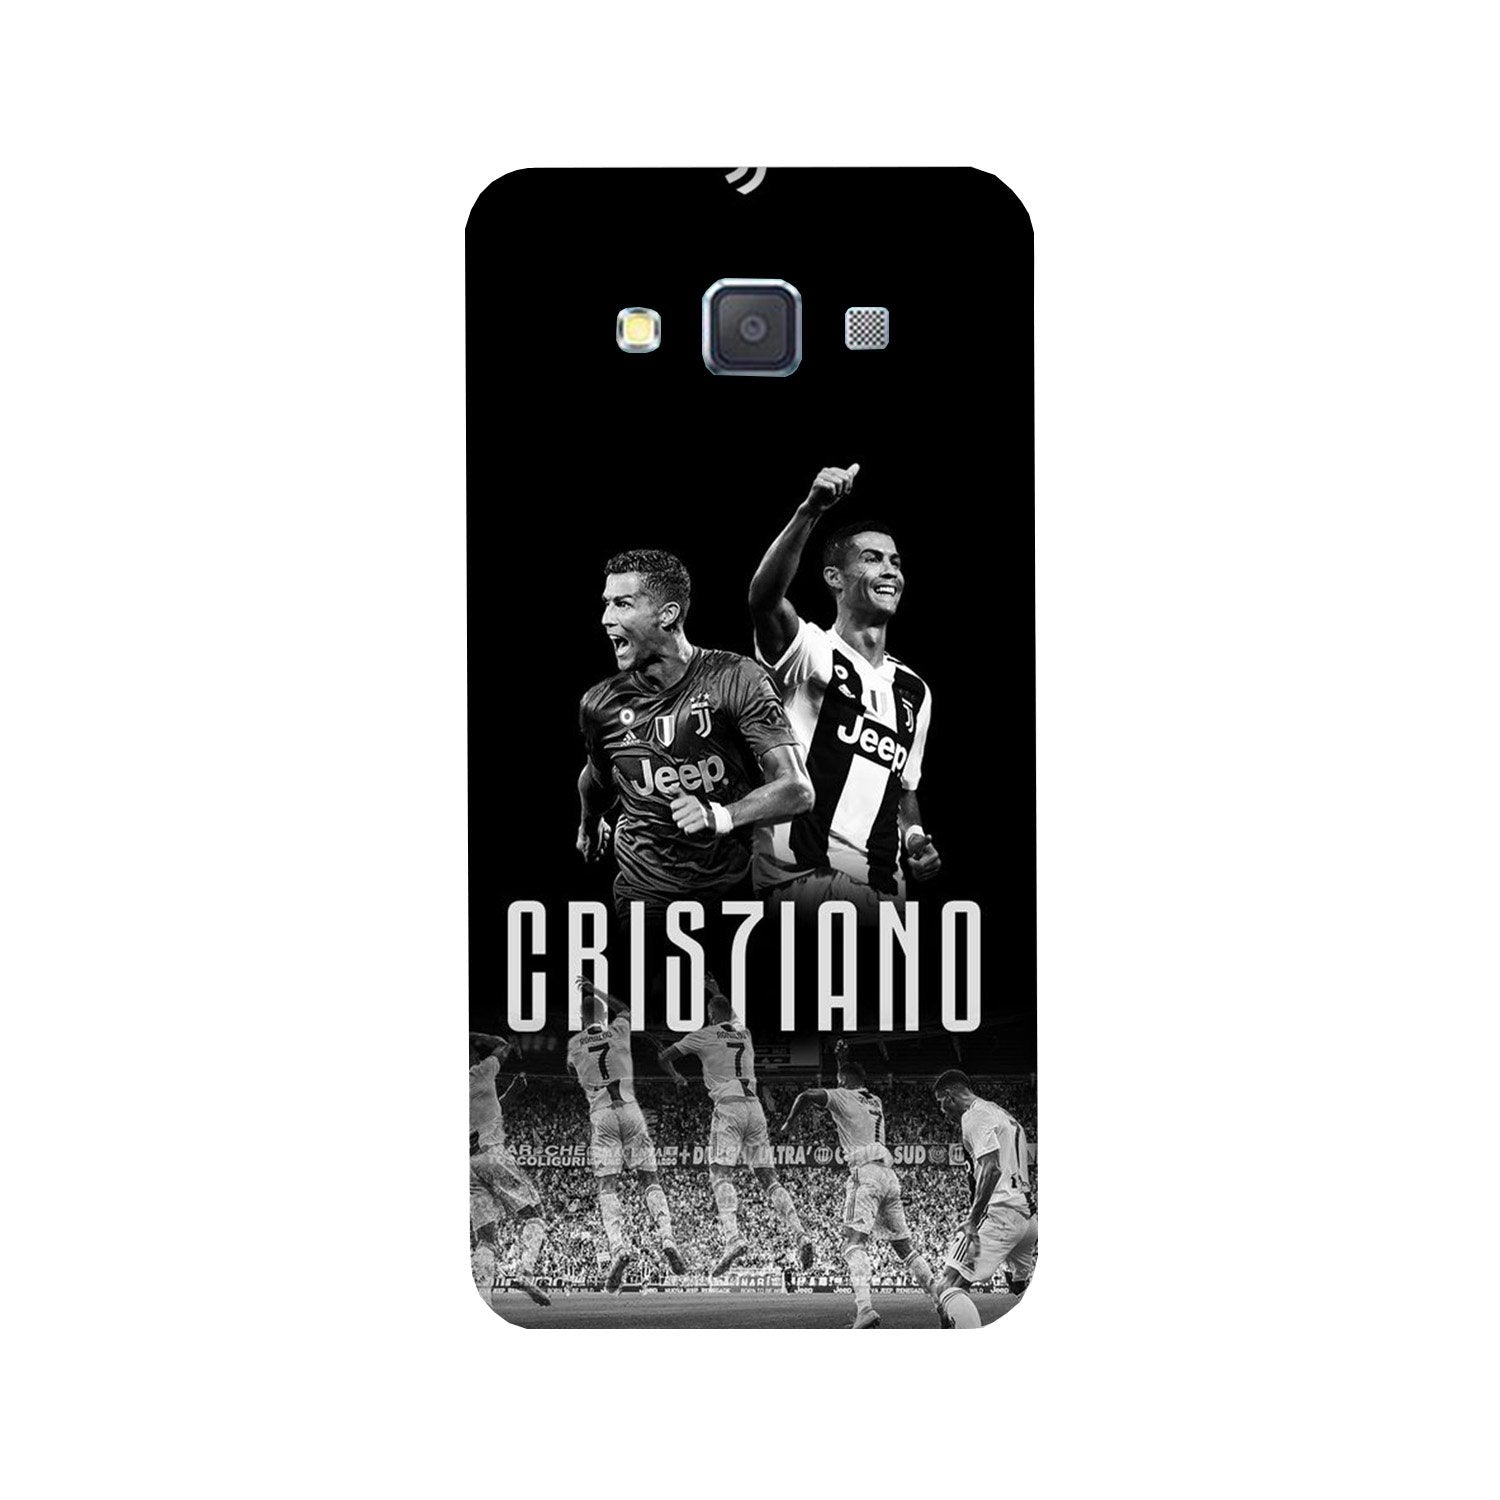 Cristiano Case for Galaxy E7(Design - 165)